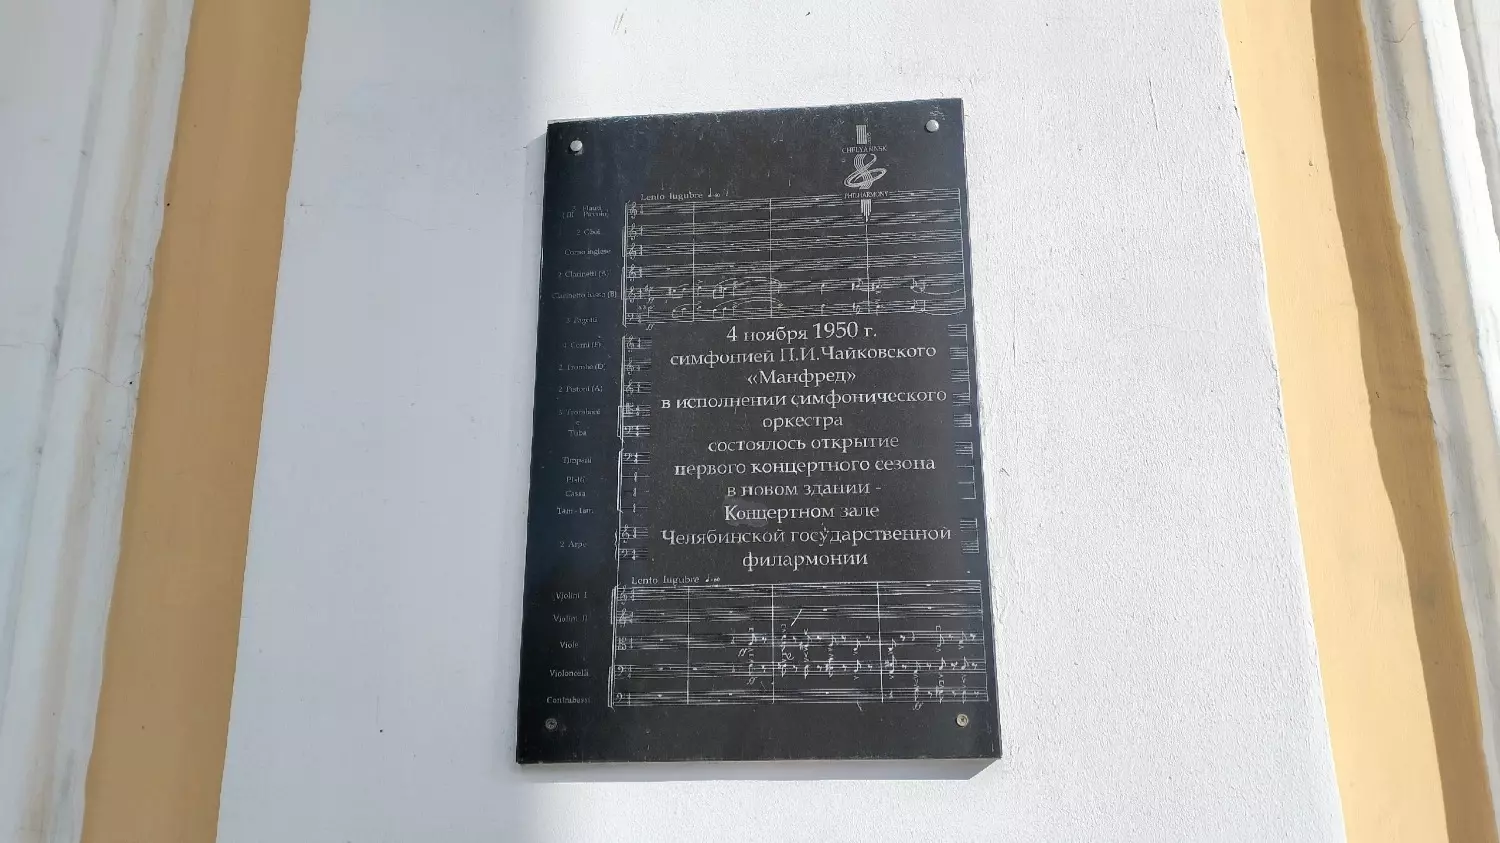 Первый концерт в здании челябинской филармонии состоялся в 1950 году